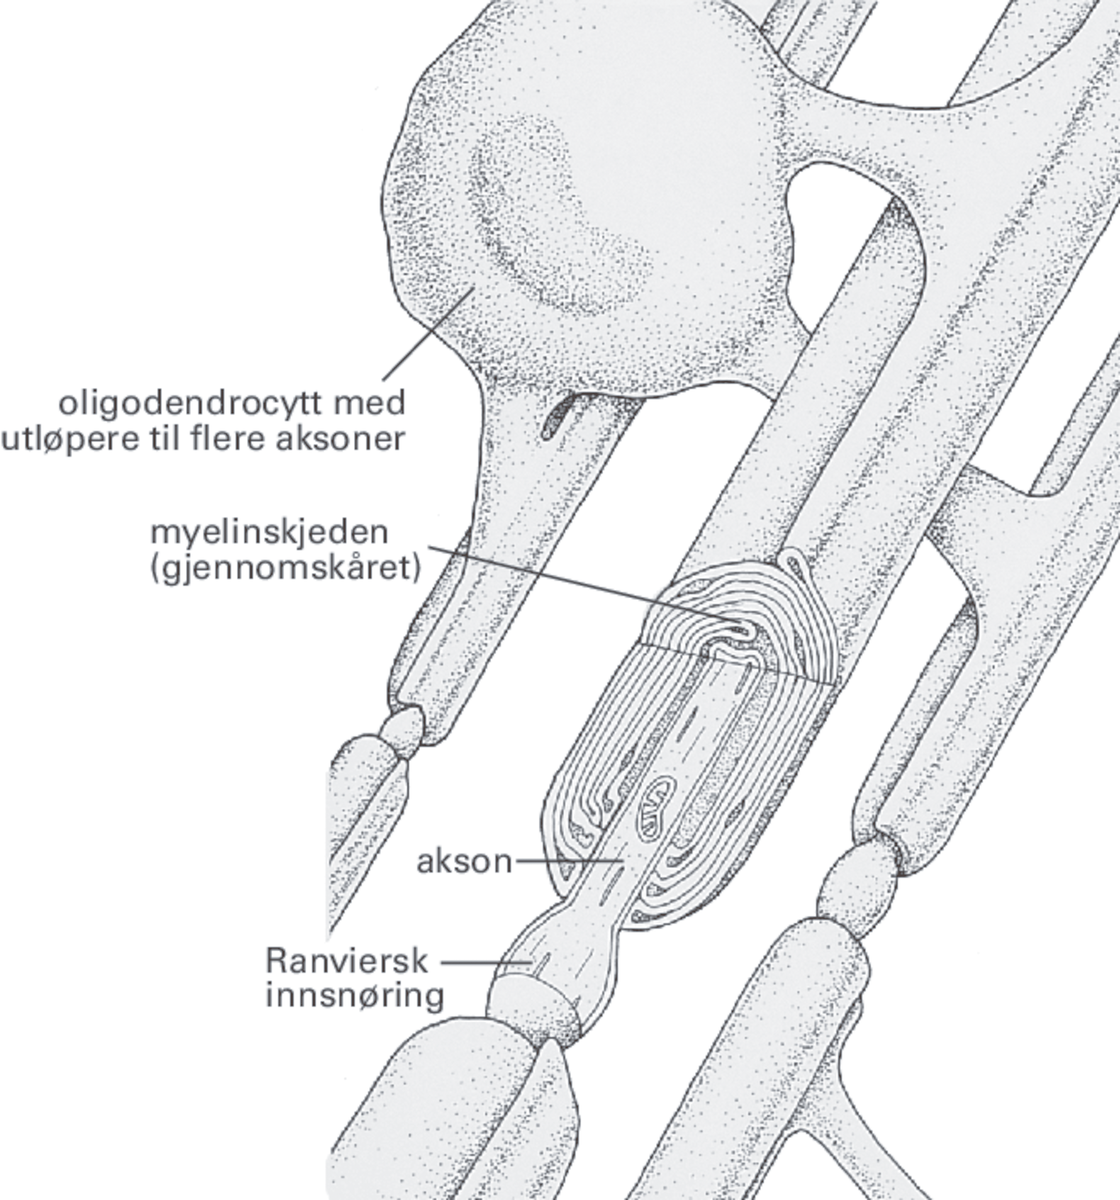 Illustrasjon av tre utsnitt av aksoner. Alle tre aksonene er omsluttet av en myelinskjede. Alle myelinskjedene kommer fra én oligodendrocytt. En av myelinskjedene er gjennomskåret og viser at myelinskjeden har mange lag. 